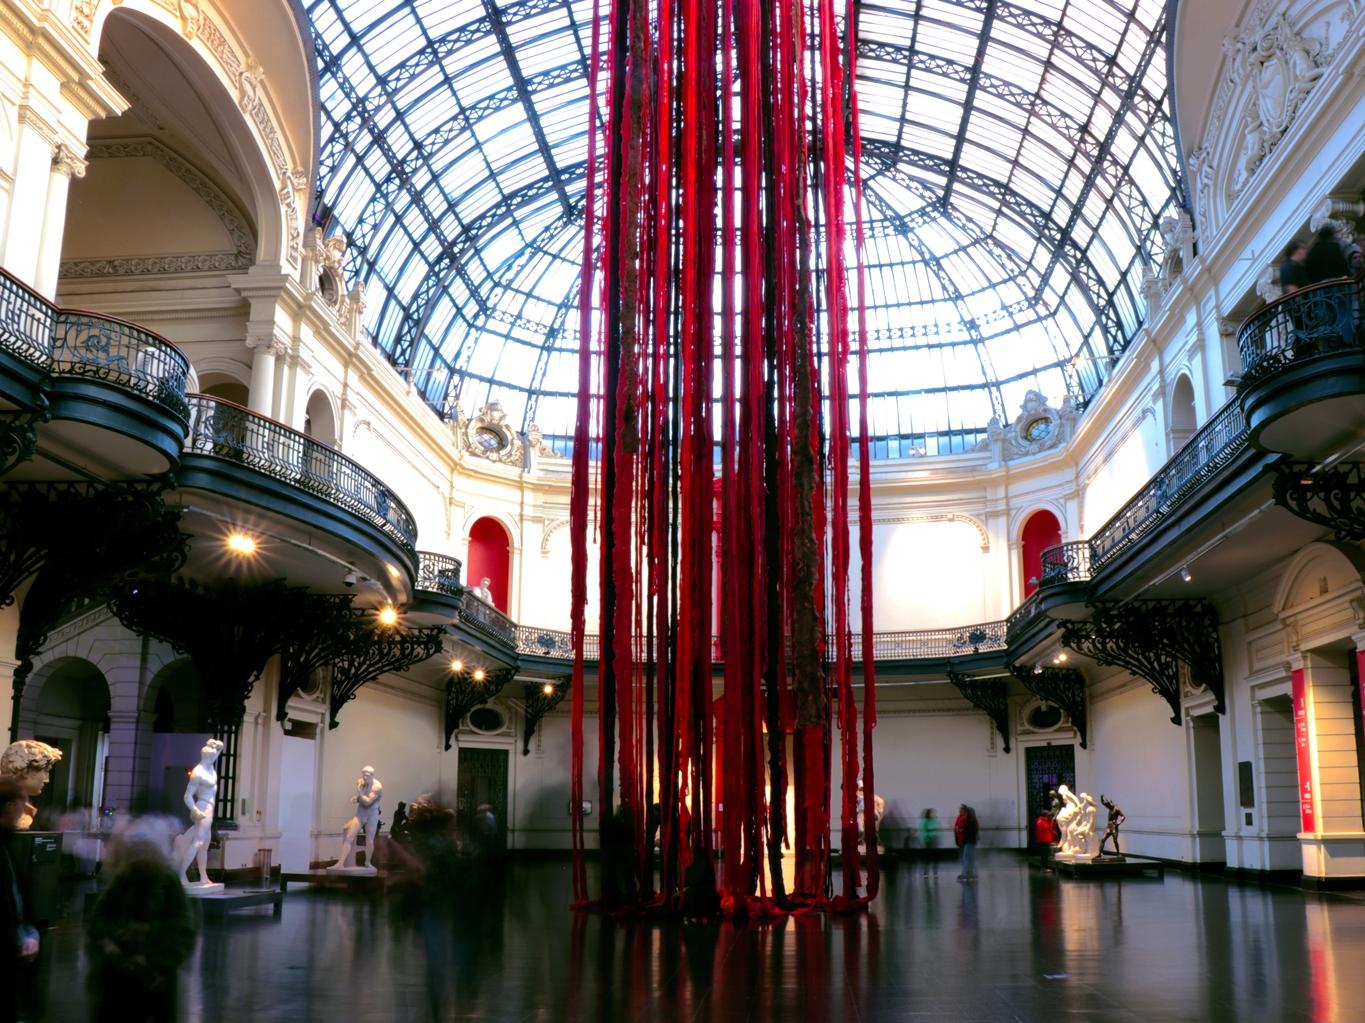 Fotografía del hall del Museo con  obra que consiste en lanas colgantes en tonos rojos